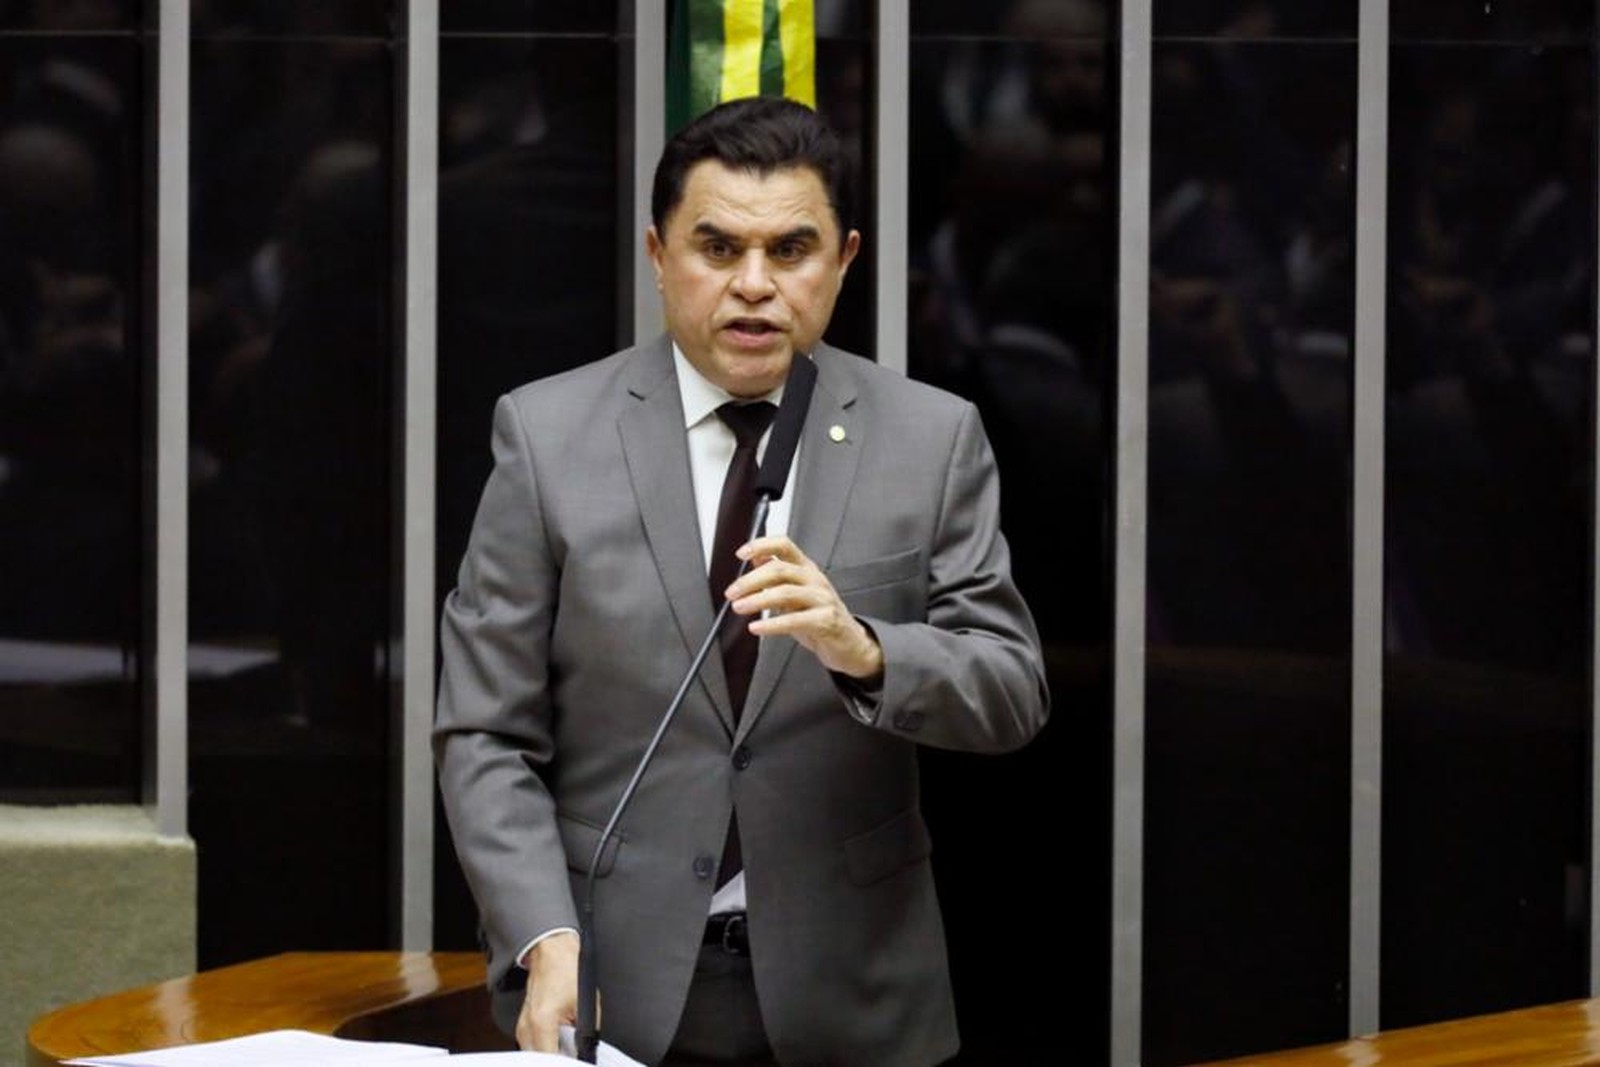 O deputado Wilson Santiago durante pronunciamento no plenário da Câmara em setembro do ano passado — Foto: Luis Macedo / Câmara dos Deputados